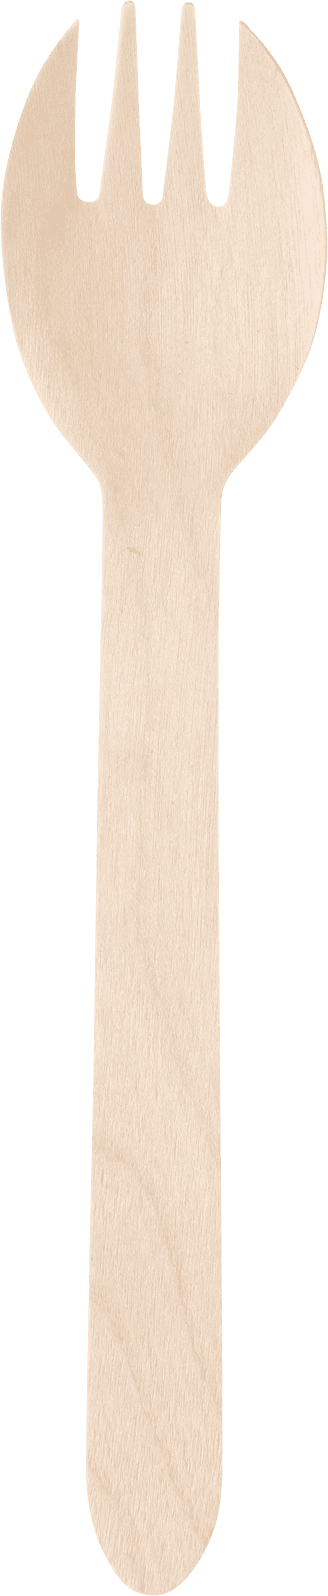 木製フォークスプーン160 | Wooden Cutlery